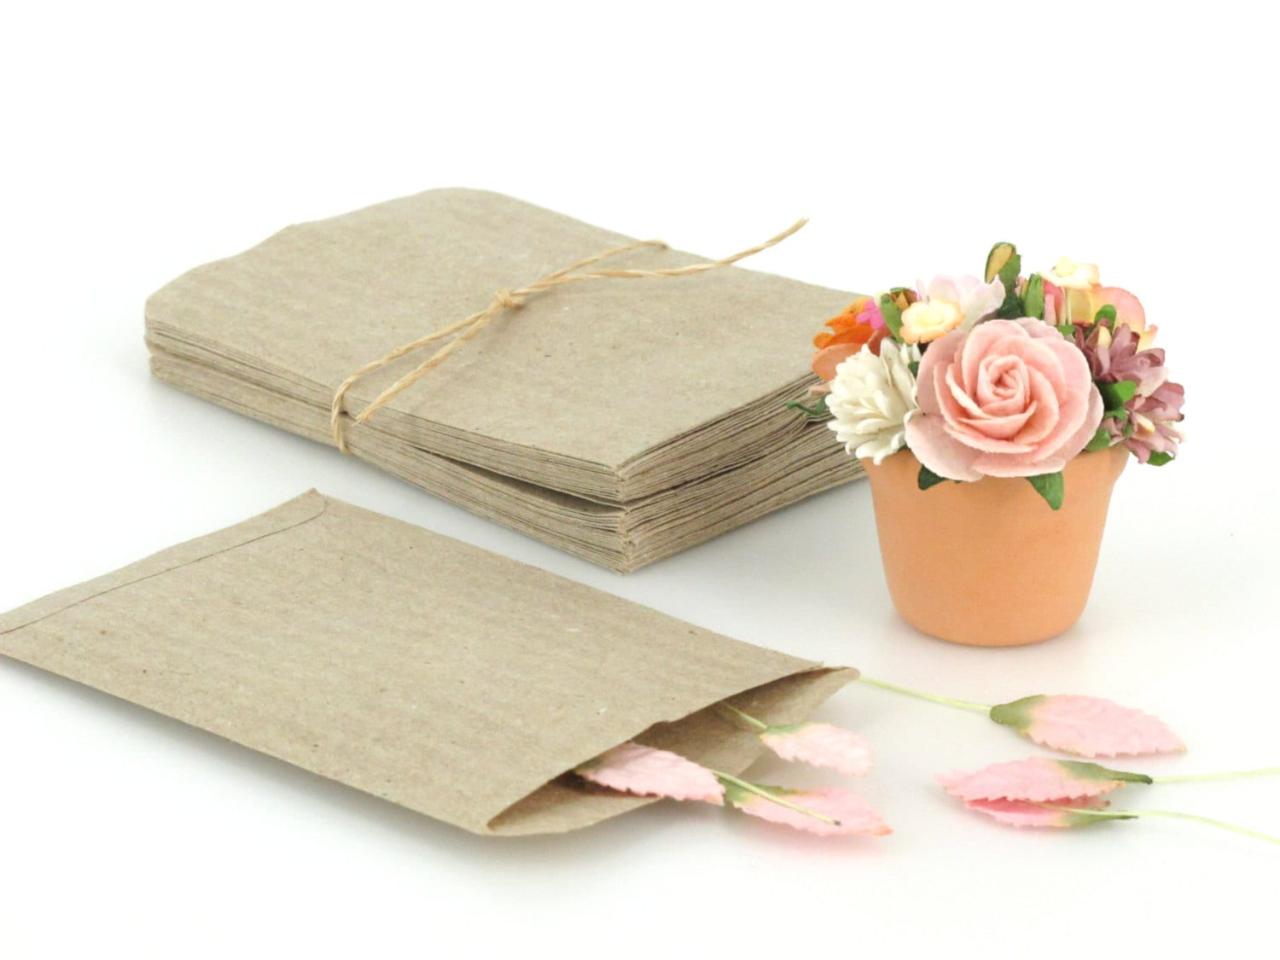 Bolsas de papel planas asequibles al por mayor: ¡compre al por mayor y ahorre hoy!